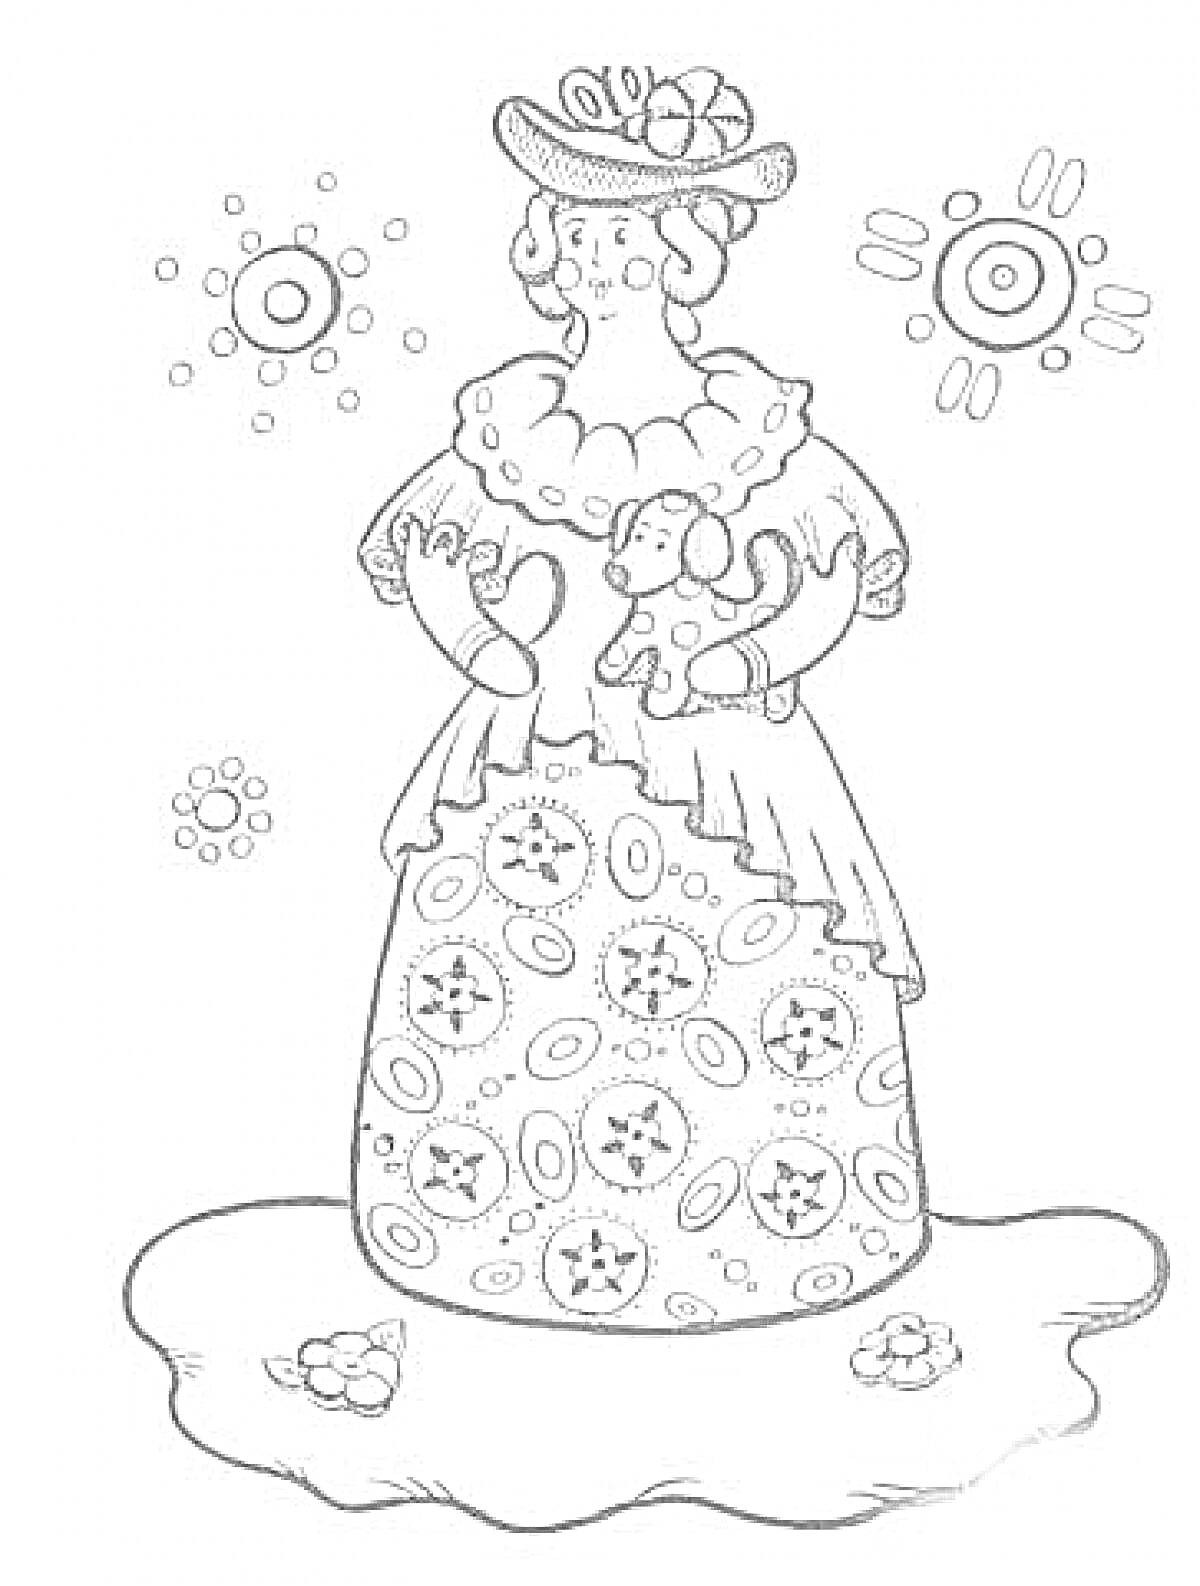 Раскраска Дымковская игрушка - Женщина в шляпе с цветами на подоле платья, элементами кругов и узором на фоне, стоящая на земле